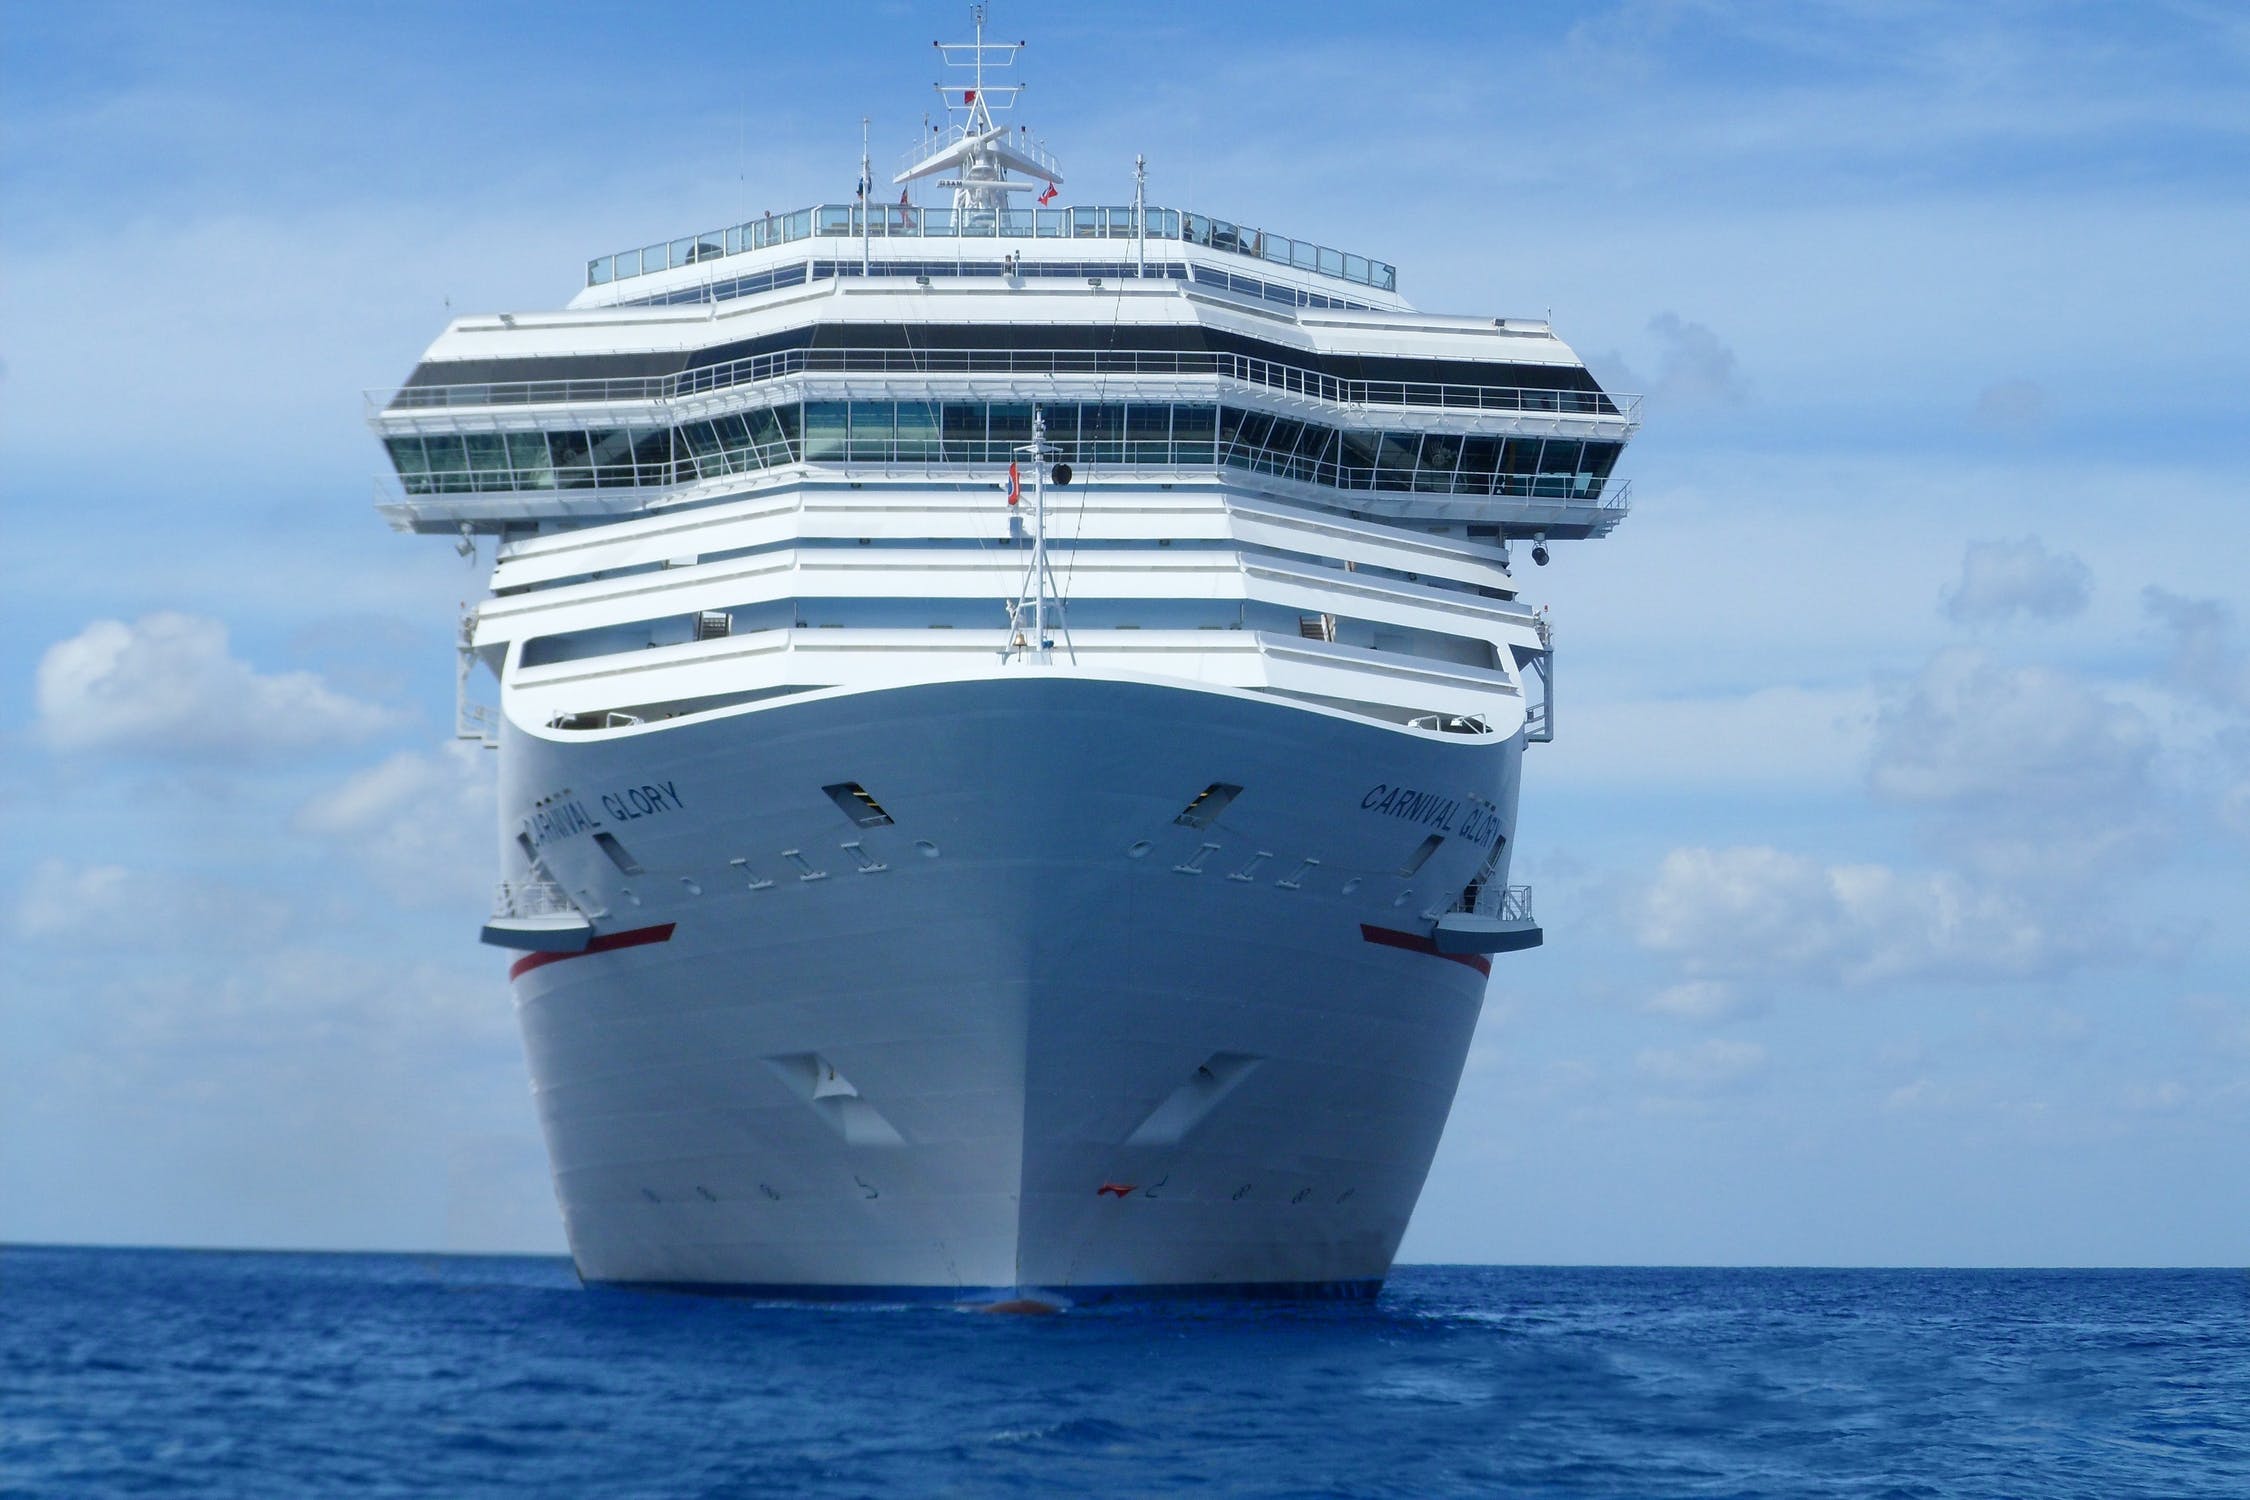 cruise-ship-holidays-cruise-vacation-68737.jpeg